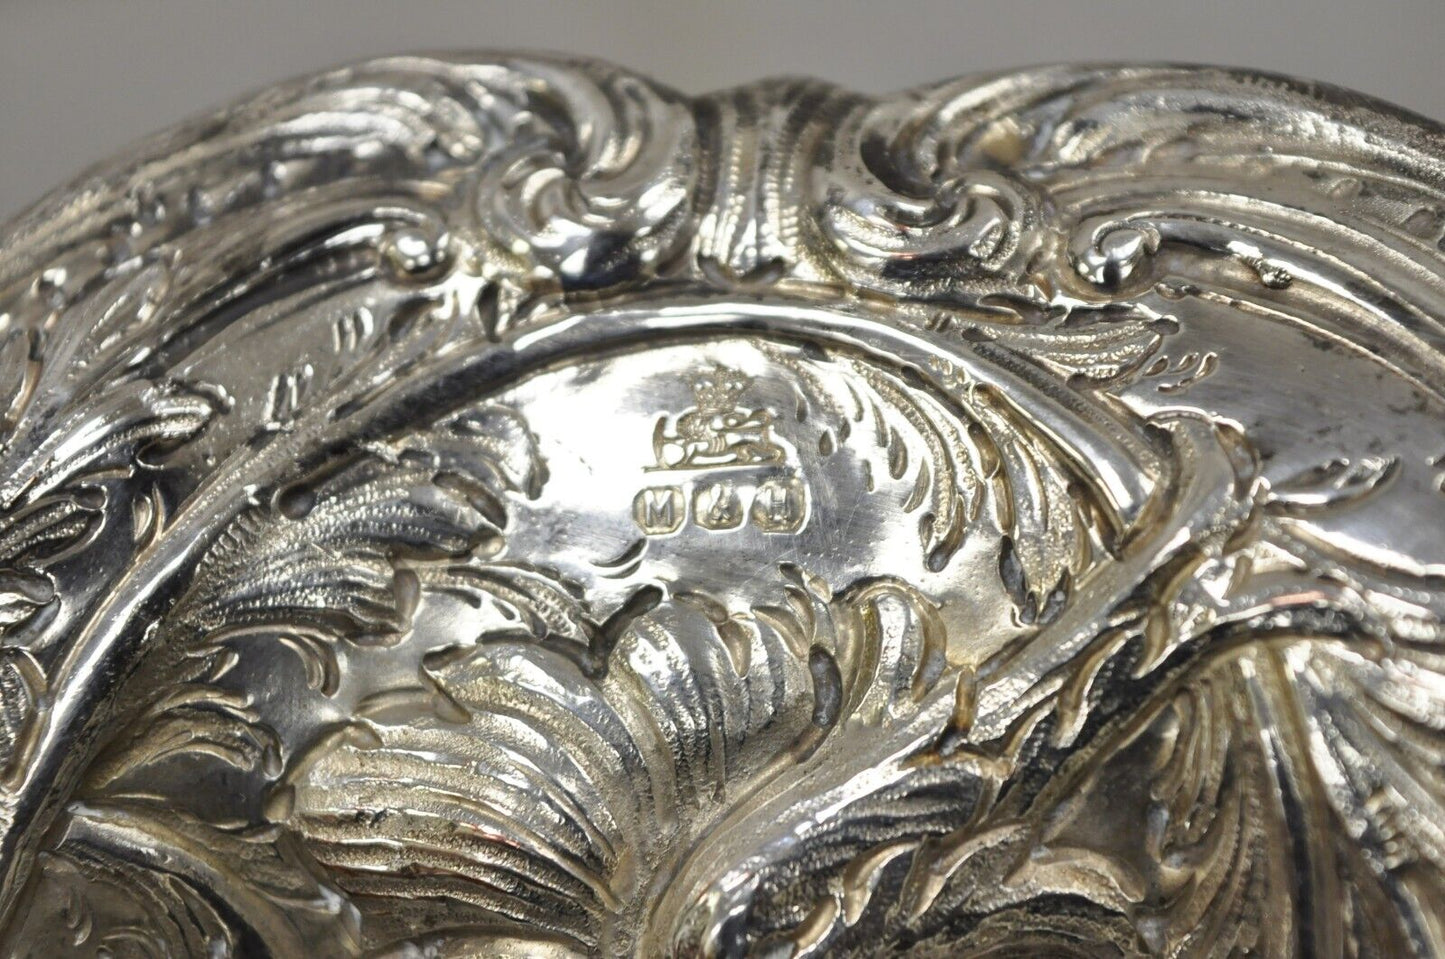 Pair M&H English Victorian Art Nouveau Silver Plate Floral Repousse Fruit Bowls